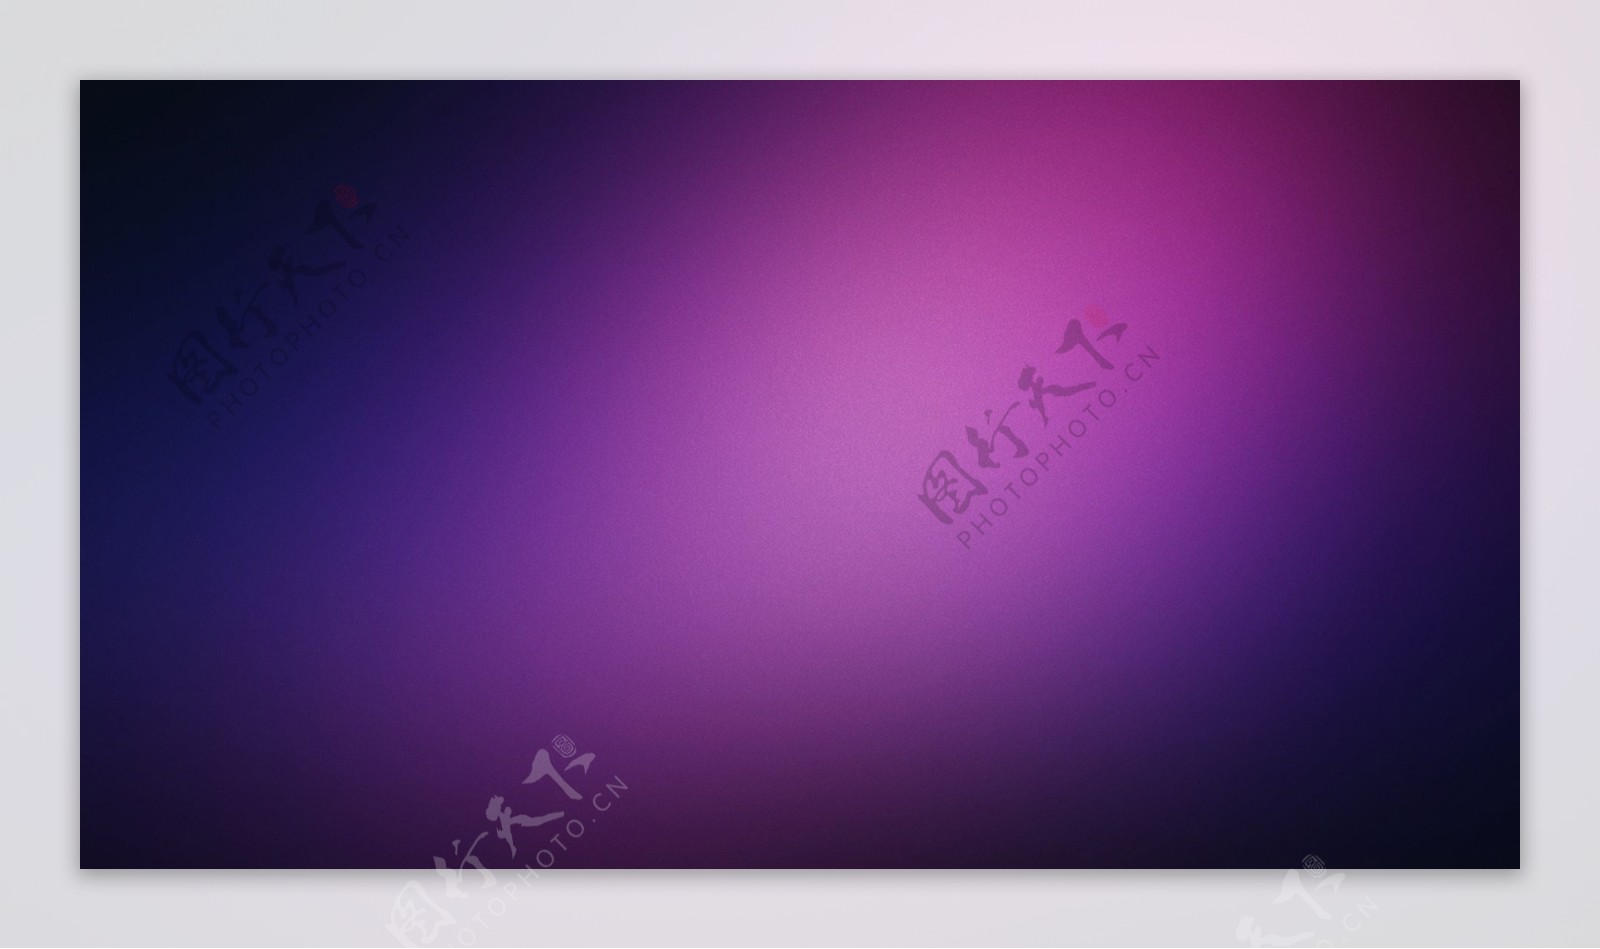 紫色大图背景设计素材图片下载桌面壁纸